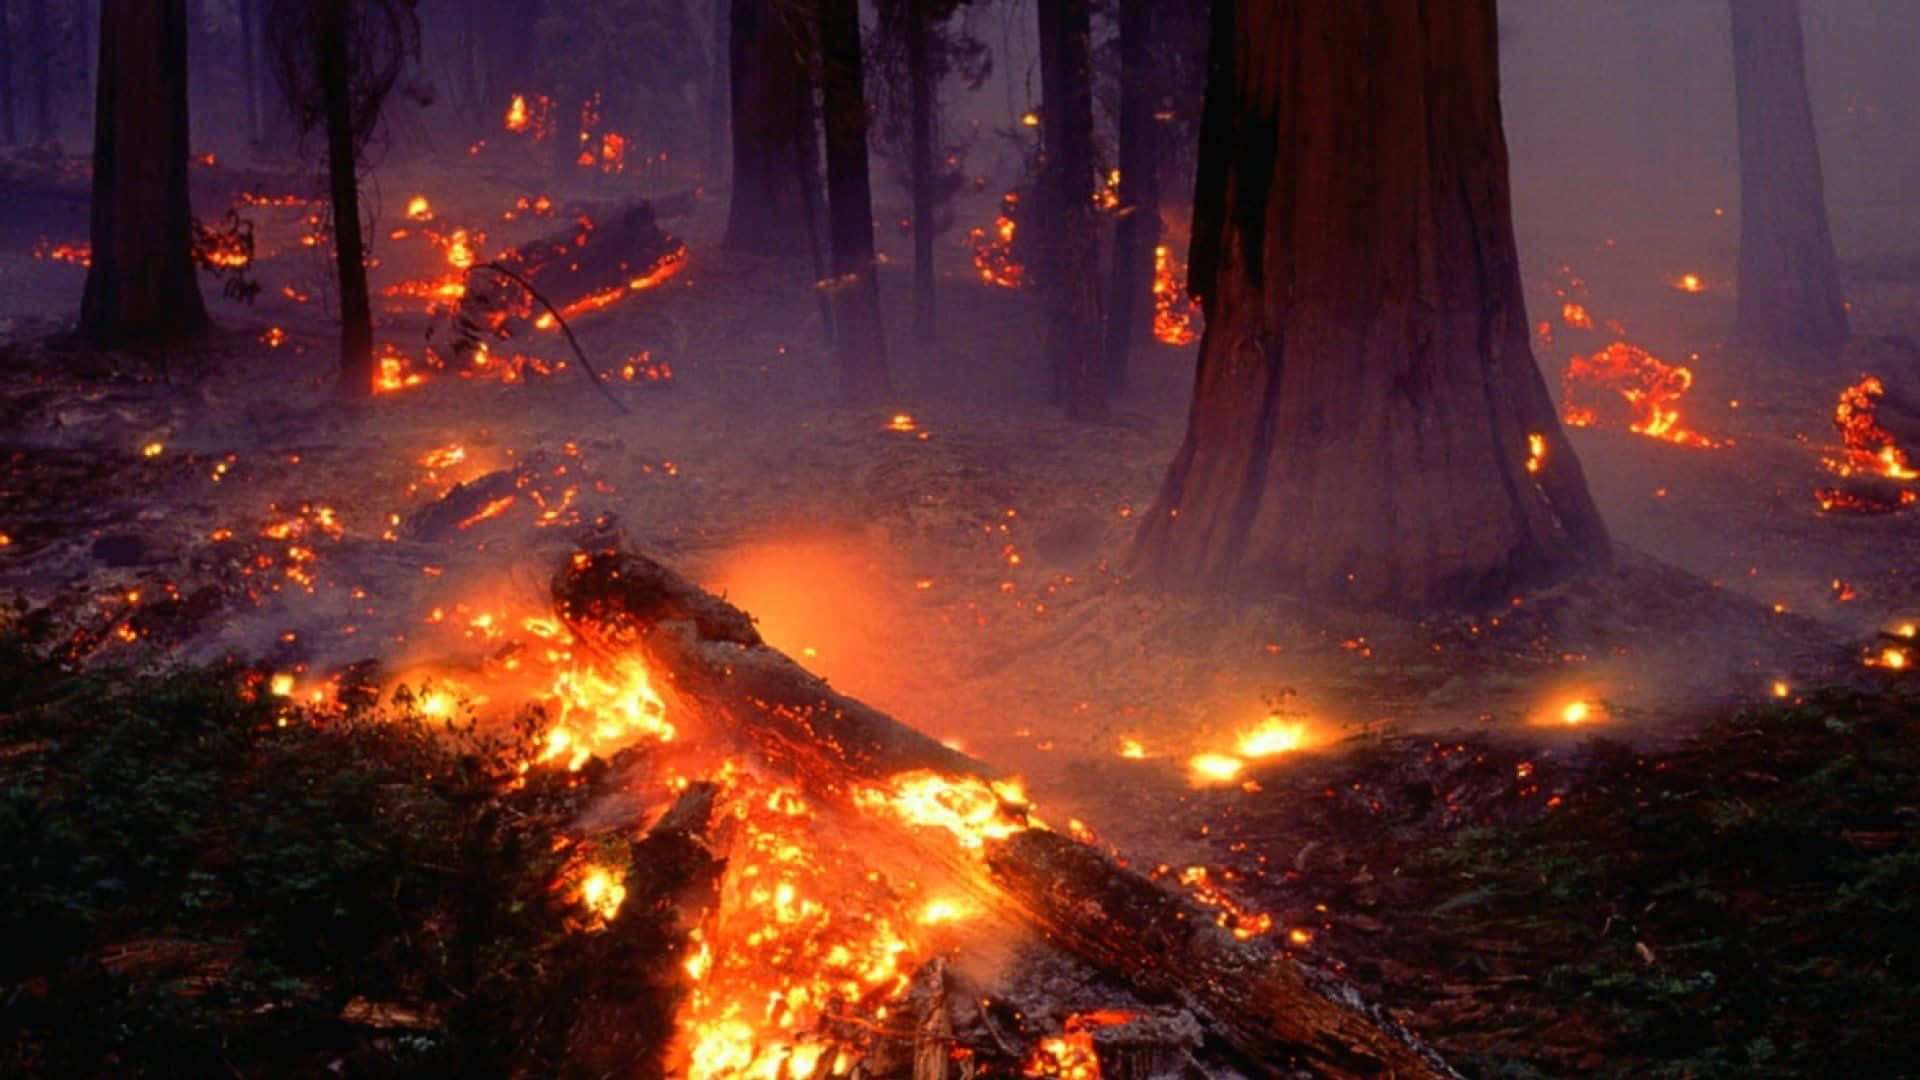 Einwaldbrand Brennt Mitten In Einem Wald.